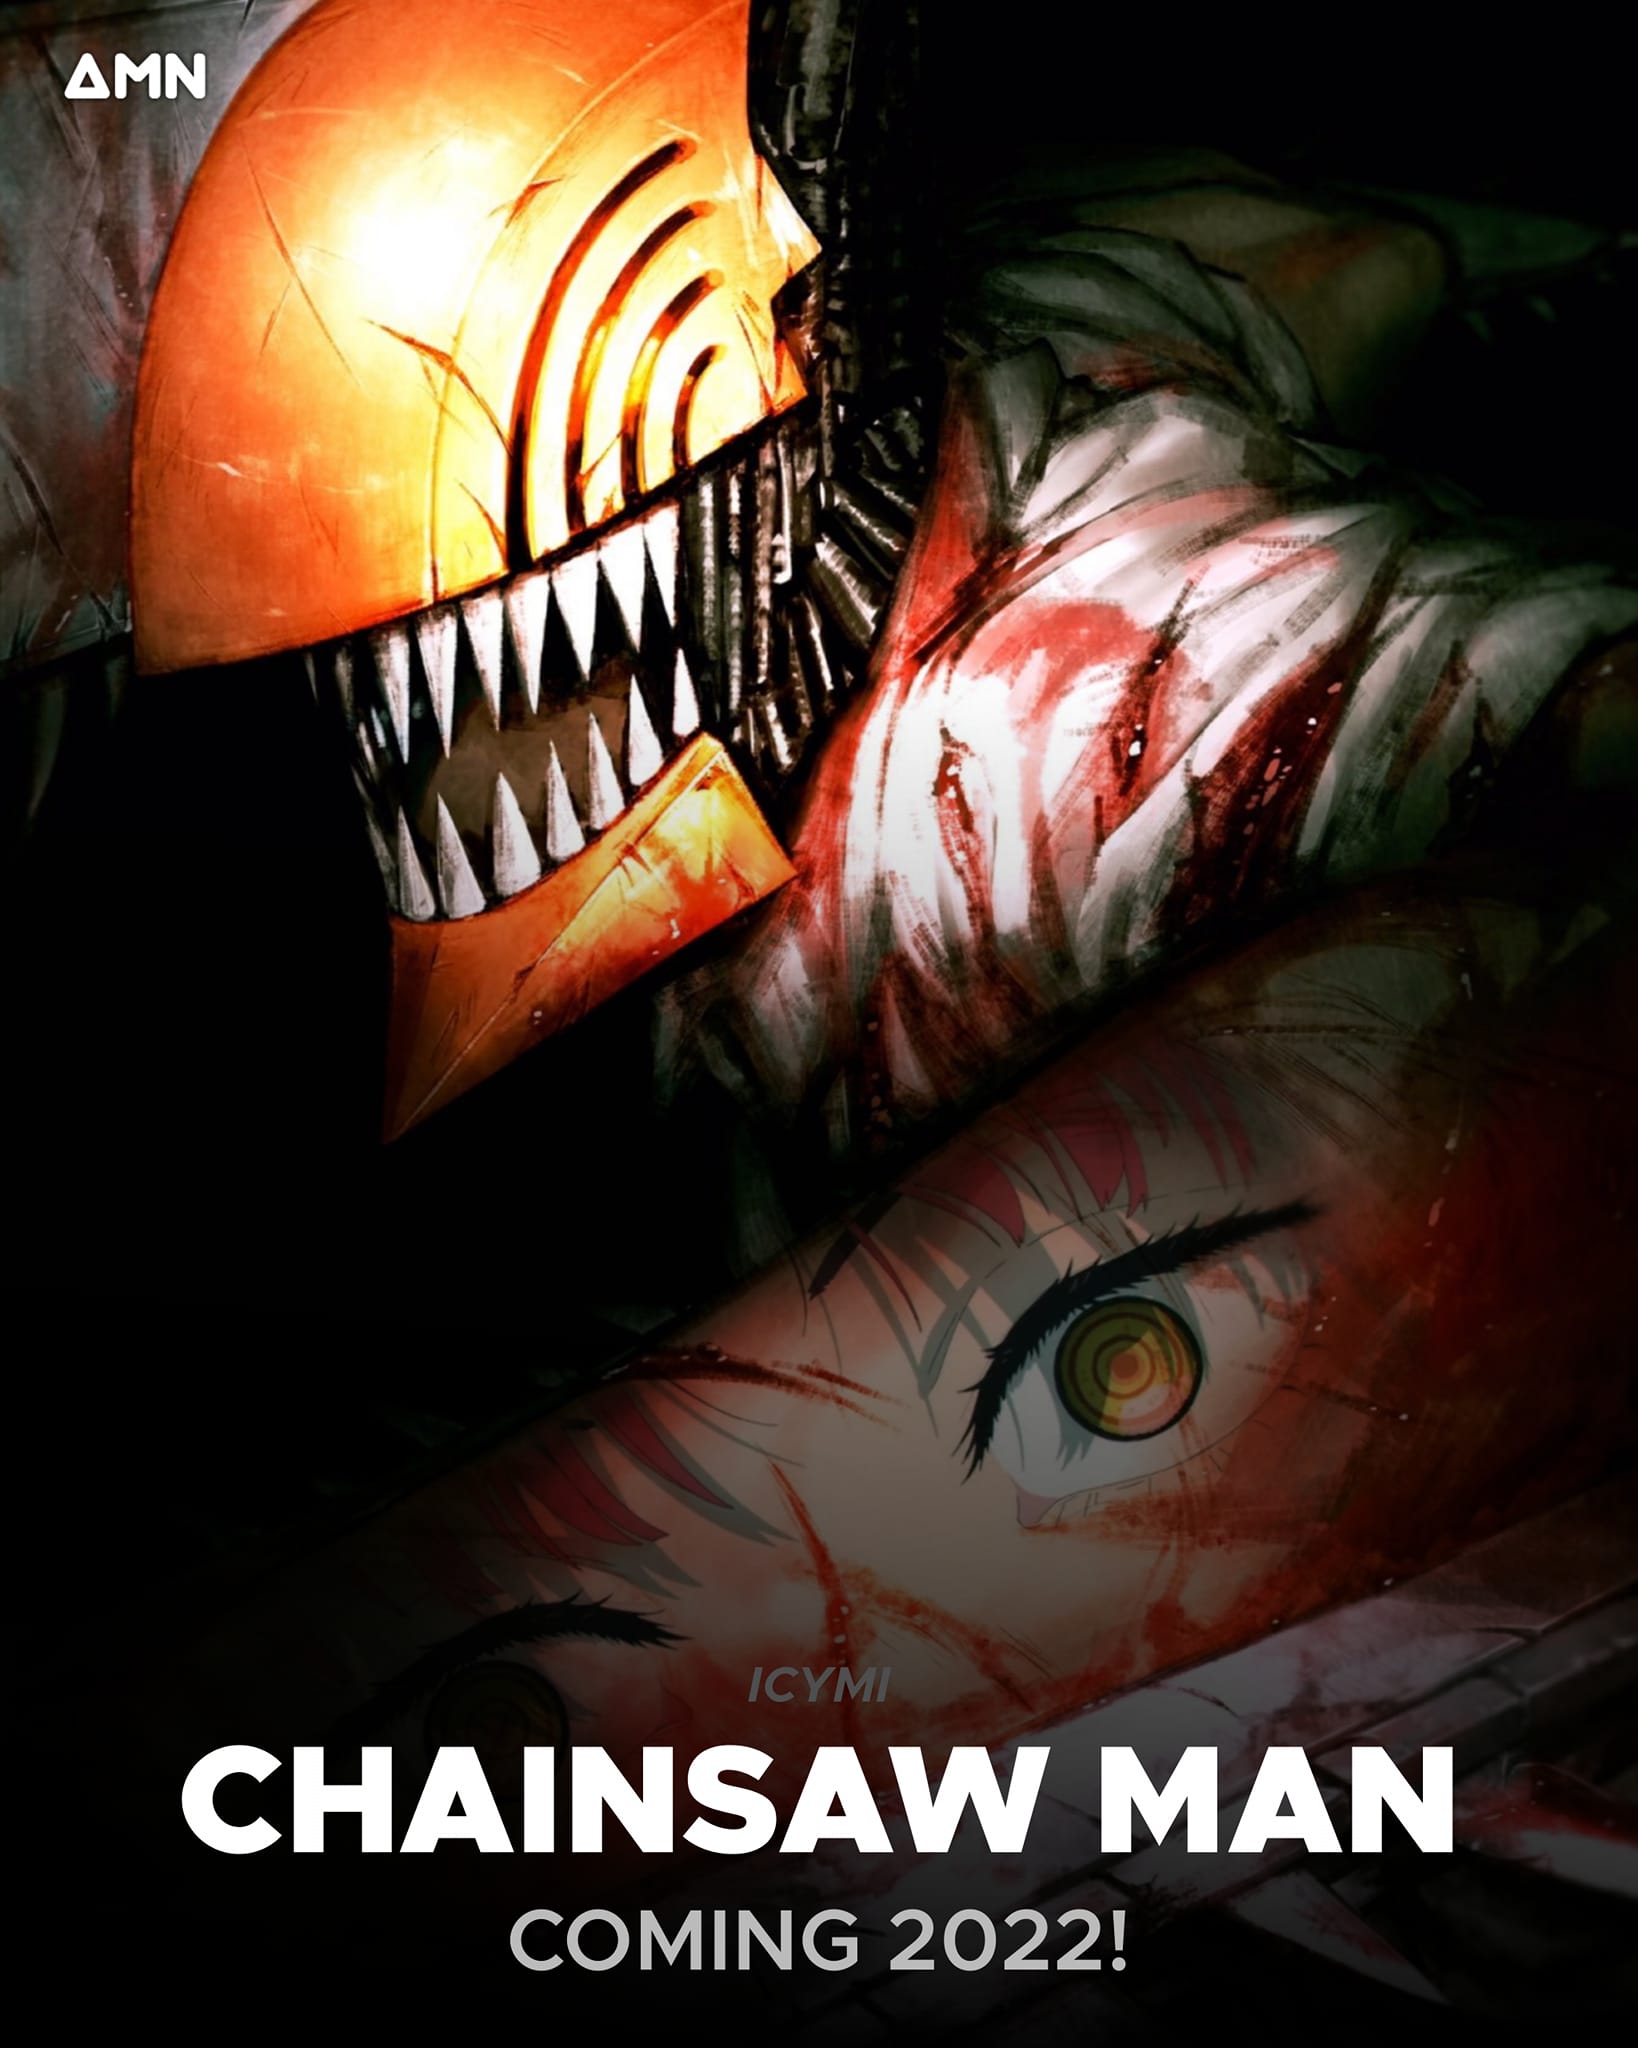 Vồn là fan của thể loại anime? Bạn muốn khám phá thế giới đầy bí ẩn của các quỷ cưa đổng như thế nào? Hãy tìm hiểu về bộ anime Chainsaw Man, đã được cho ra mắt khán giả với những pha hành động hấp dẫn cùng những tình huống đầy căng thẳng. Lên đường khám phá kho tàng kinh hoàng của ngành anime ngay bây giờ!